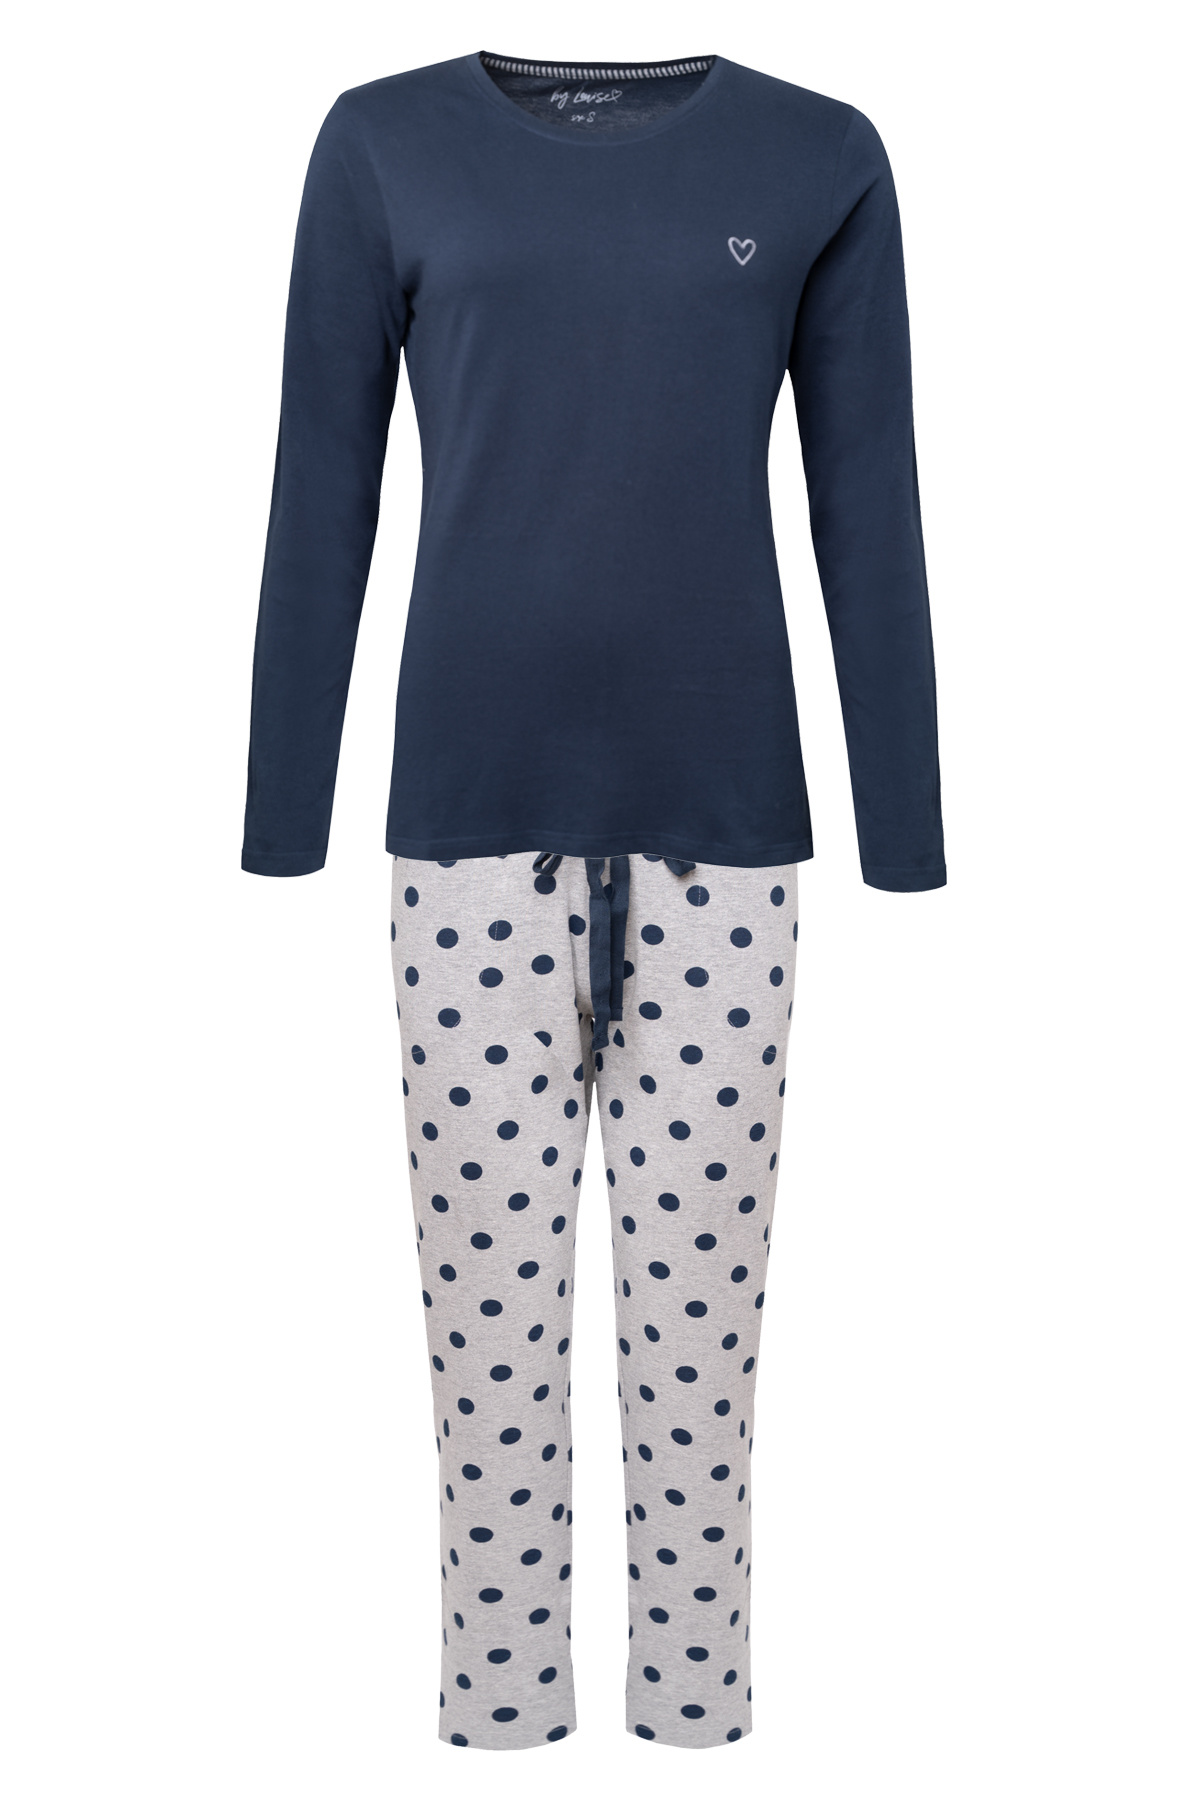 By Louise By Louise Essential Dames Pyjama Set Lang Katoen Blauw Gestipt